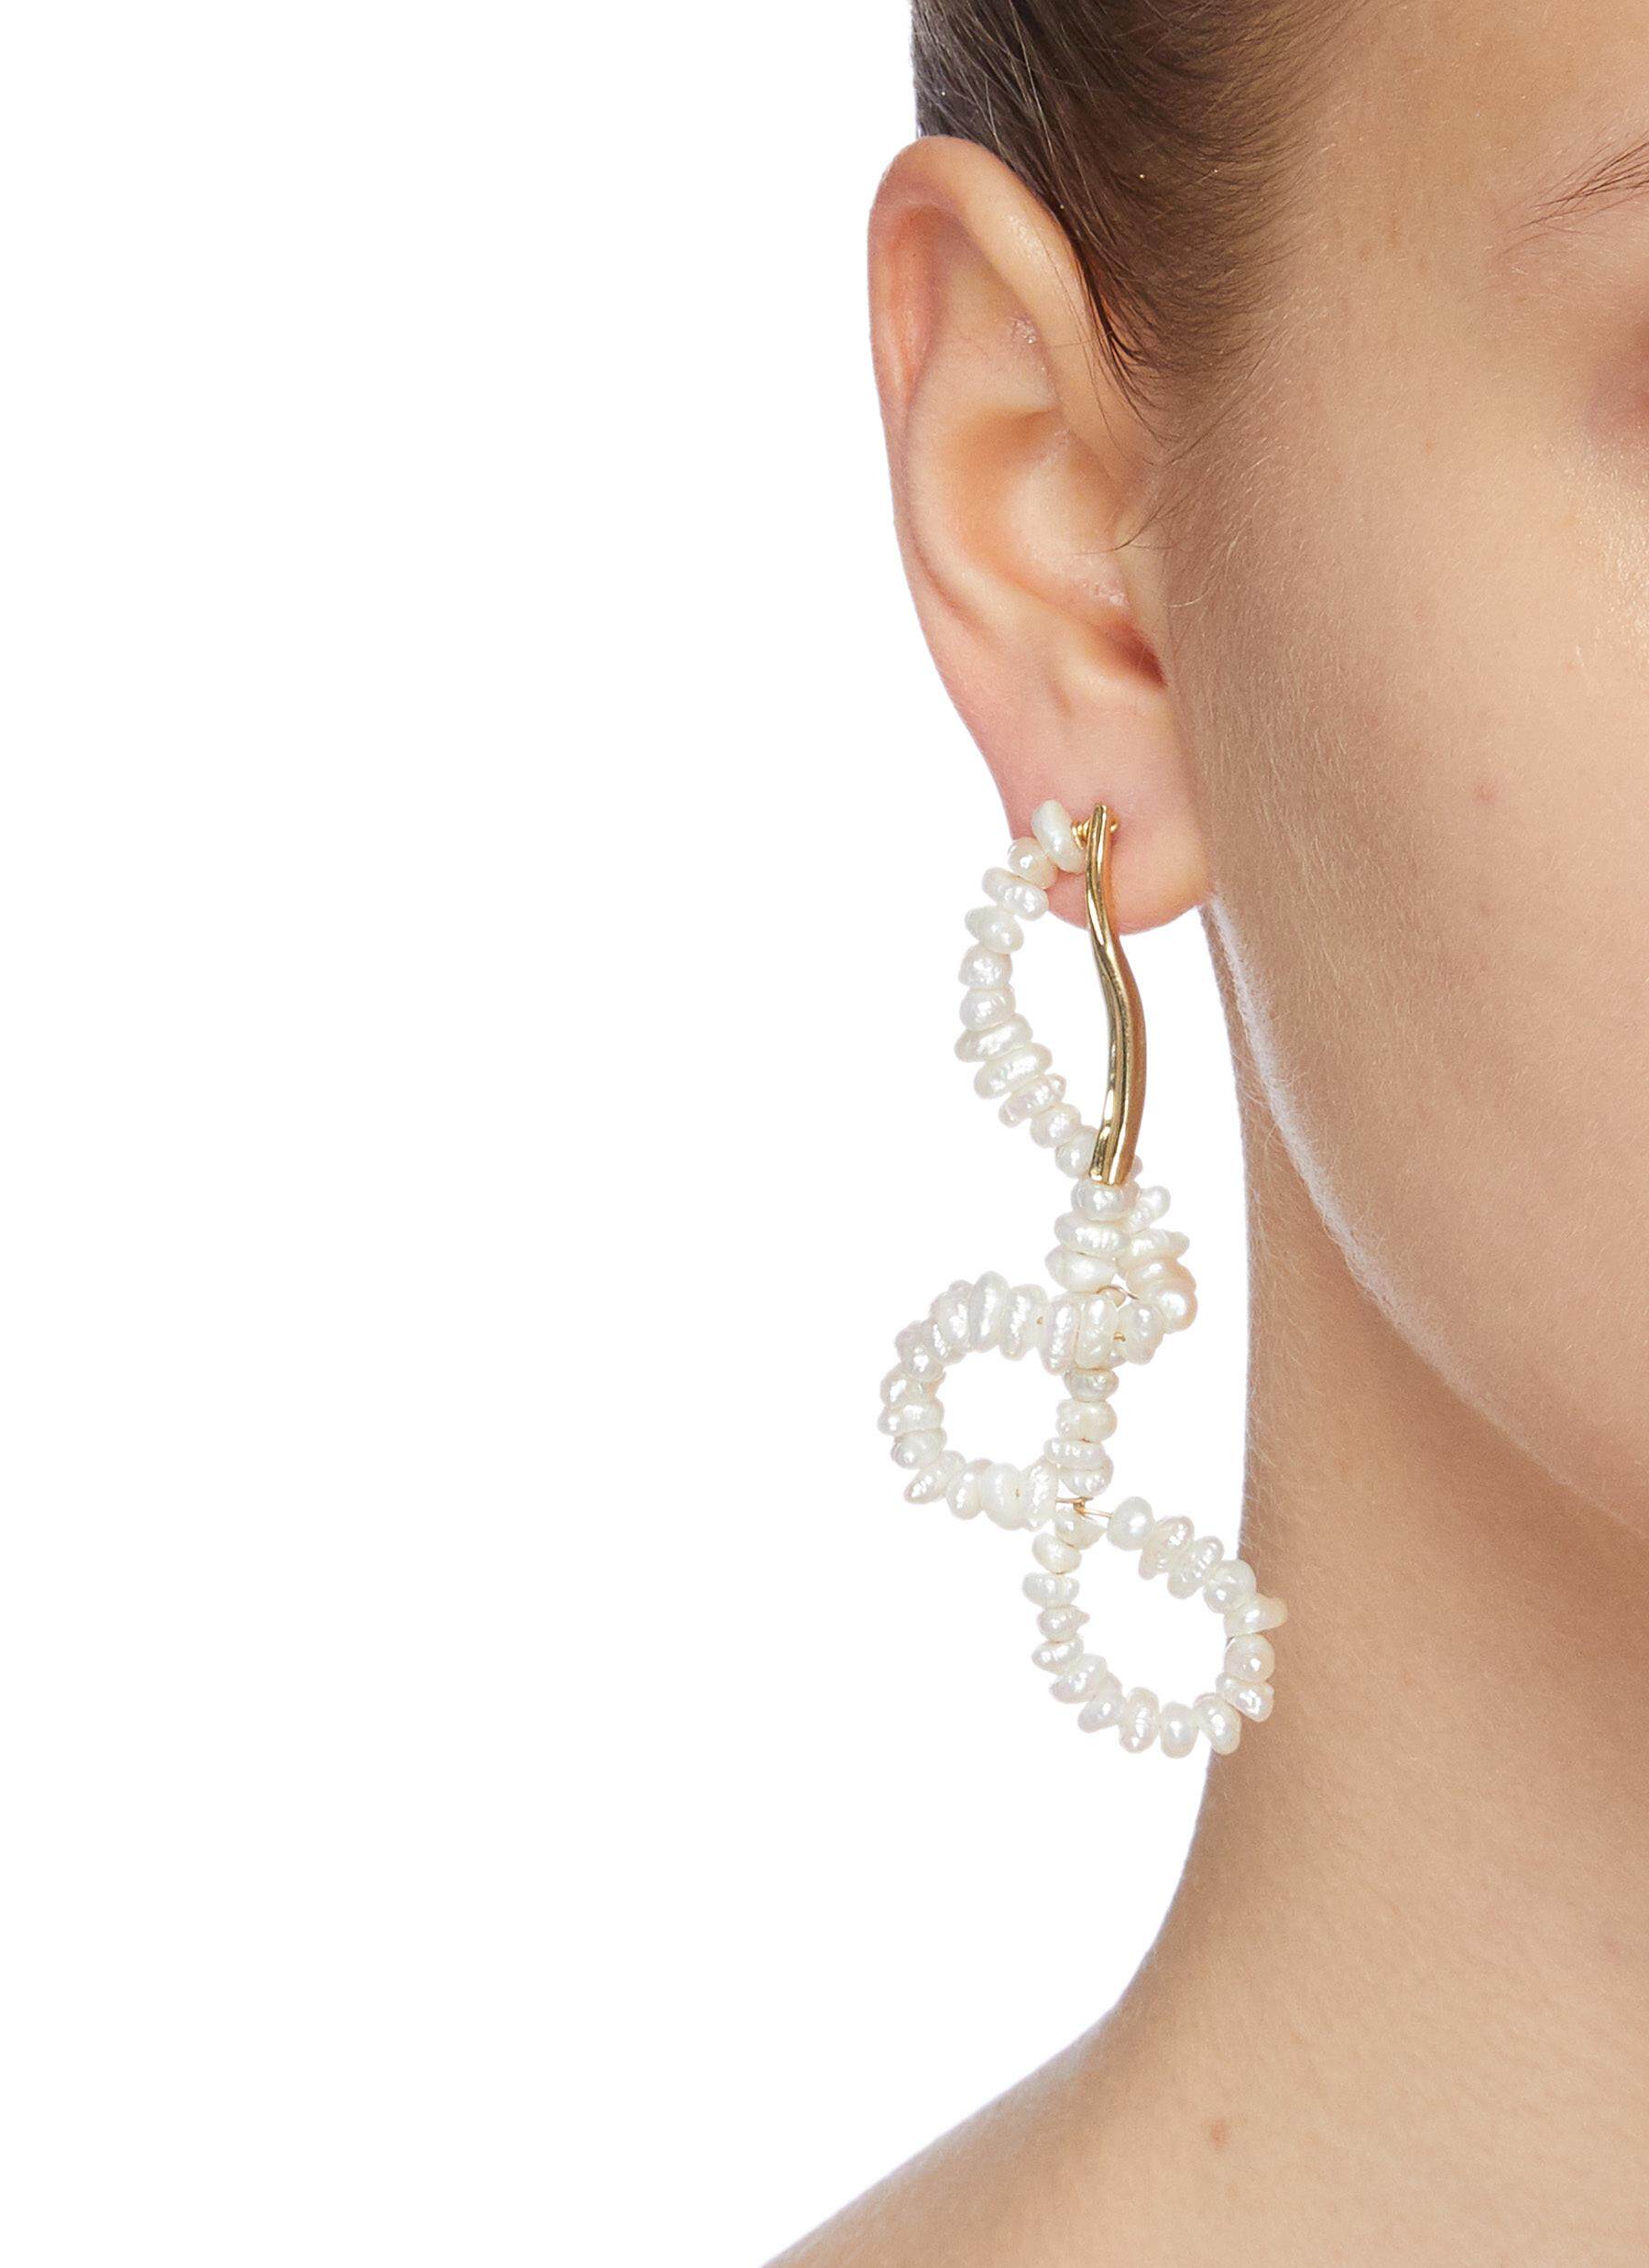 寓意「圓滿」的珍珠是結婚禮物首選 $3000以下珍珠耳環推介